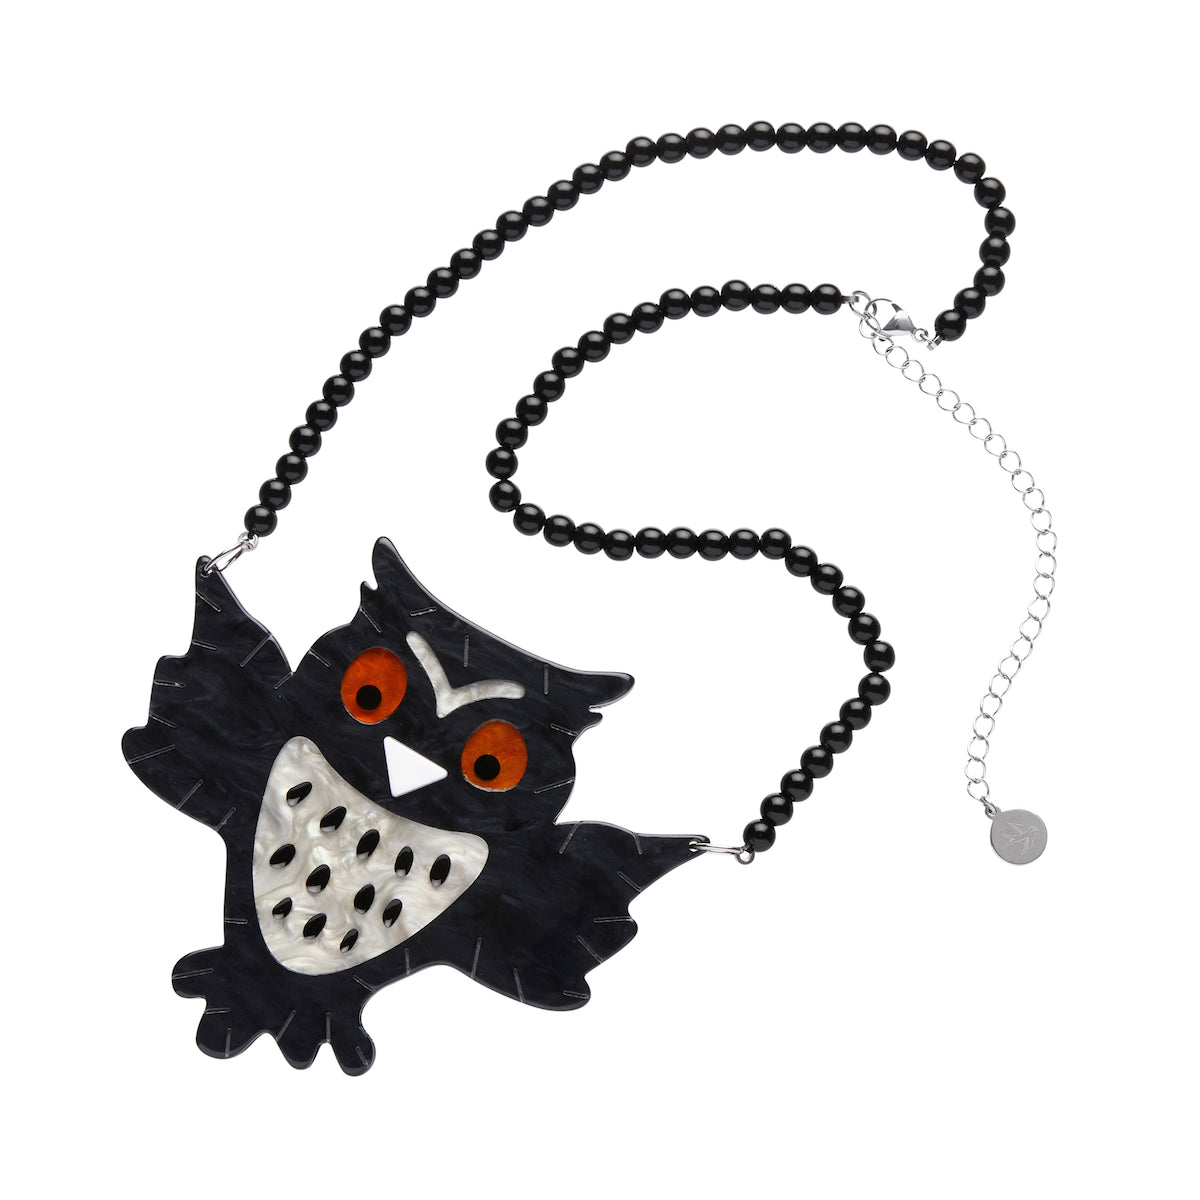 A Halloween Hoot Beaded Necklace by Erstwilder